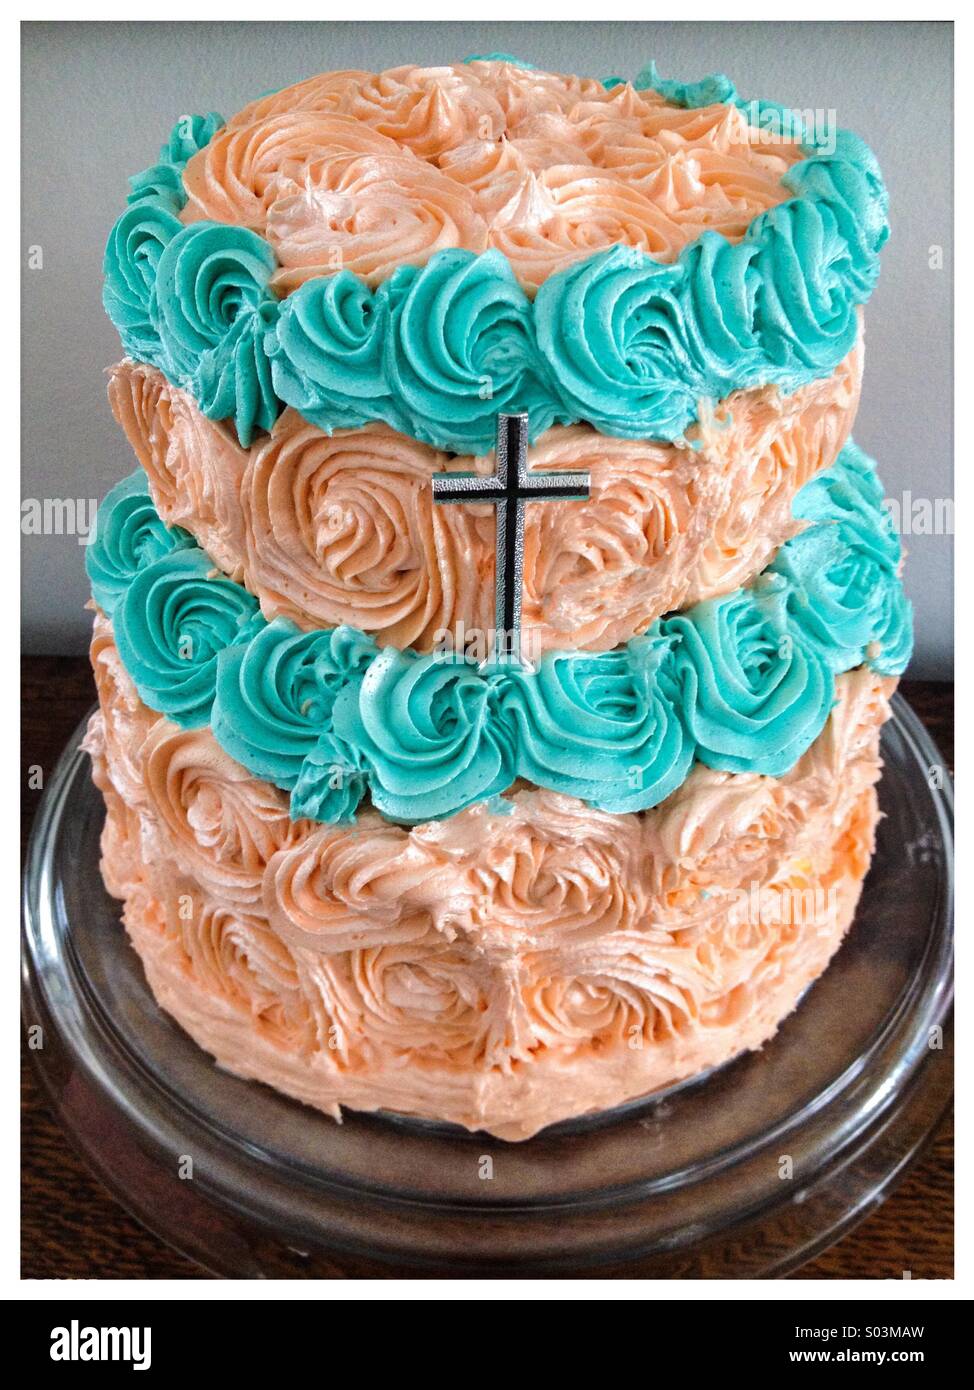 Communion cake immagini e fotografie stock ad alta risoluzione - Alamy